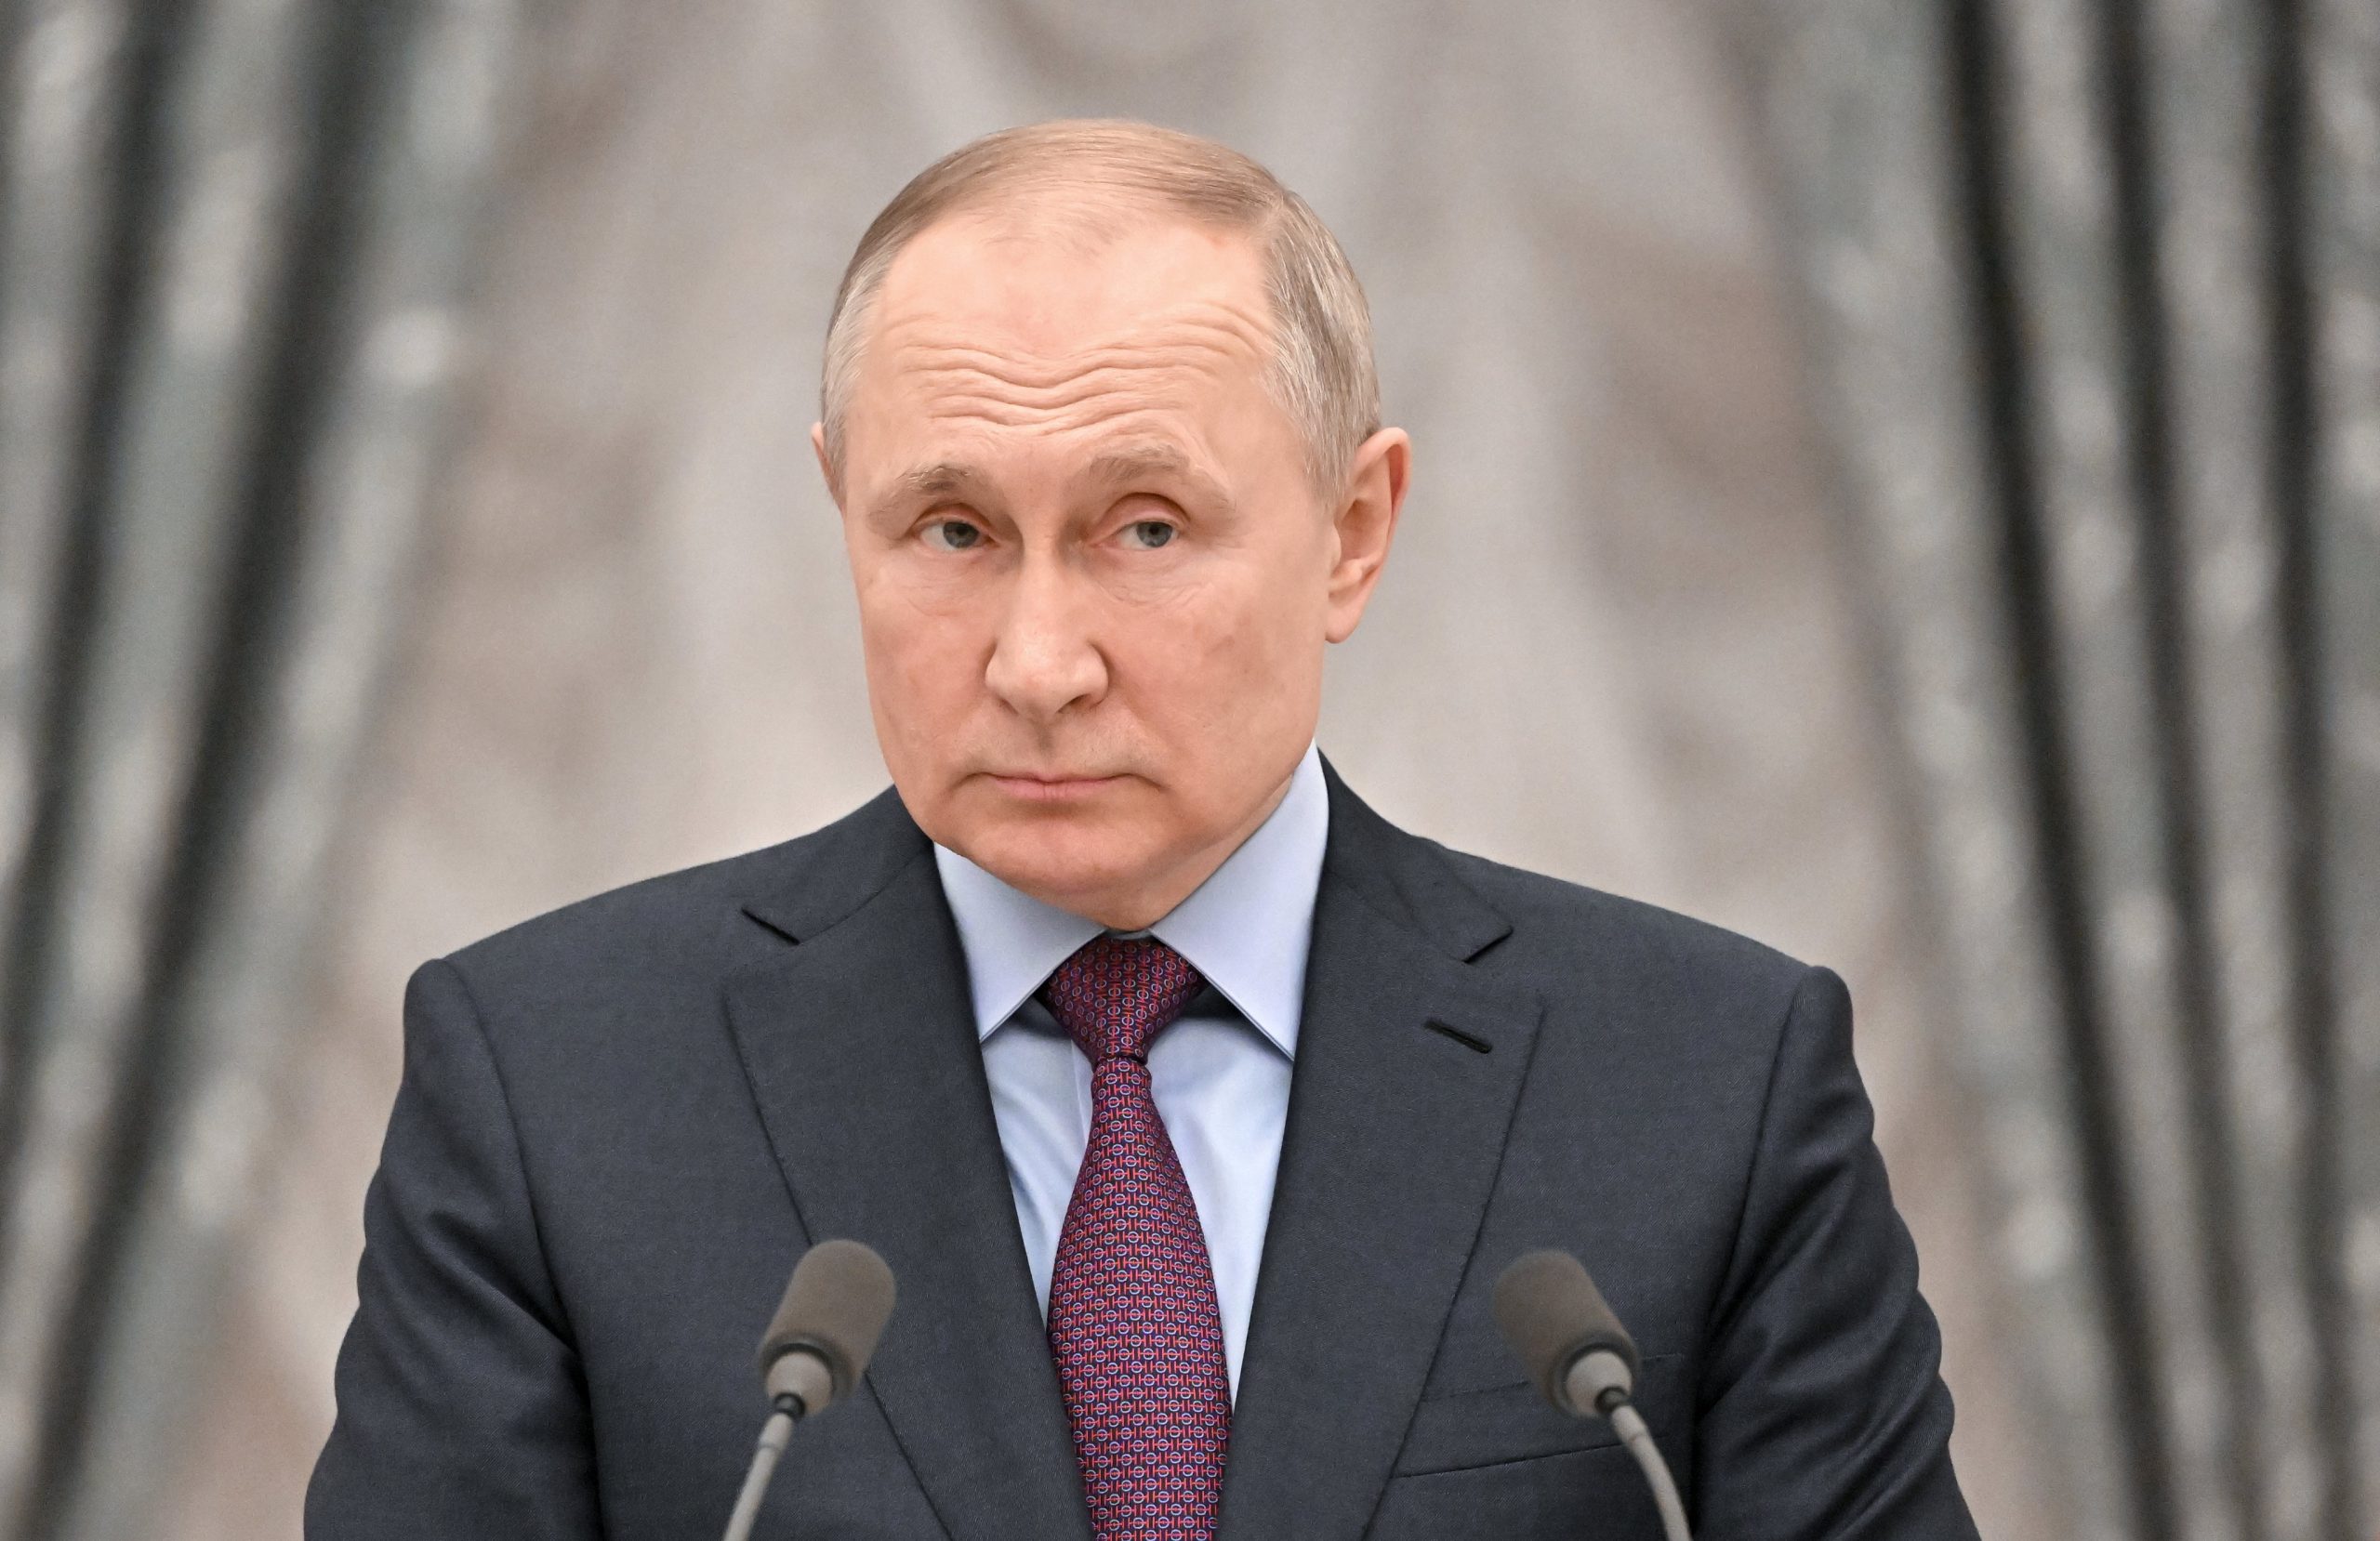 Putin spune că Rusia nu va opri sondele de petrol și nu crede că Occidentul se poate lipsi complet de energia rusească